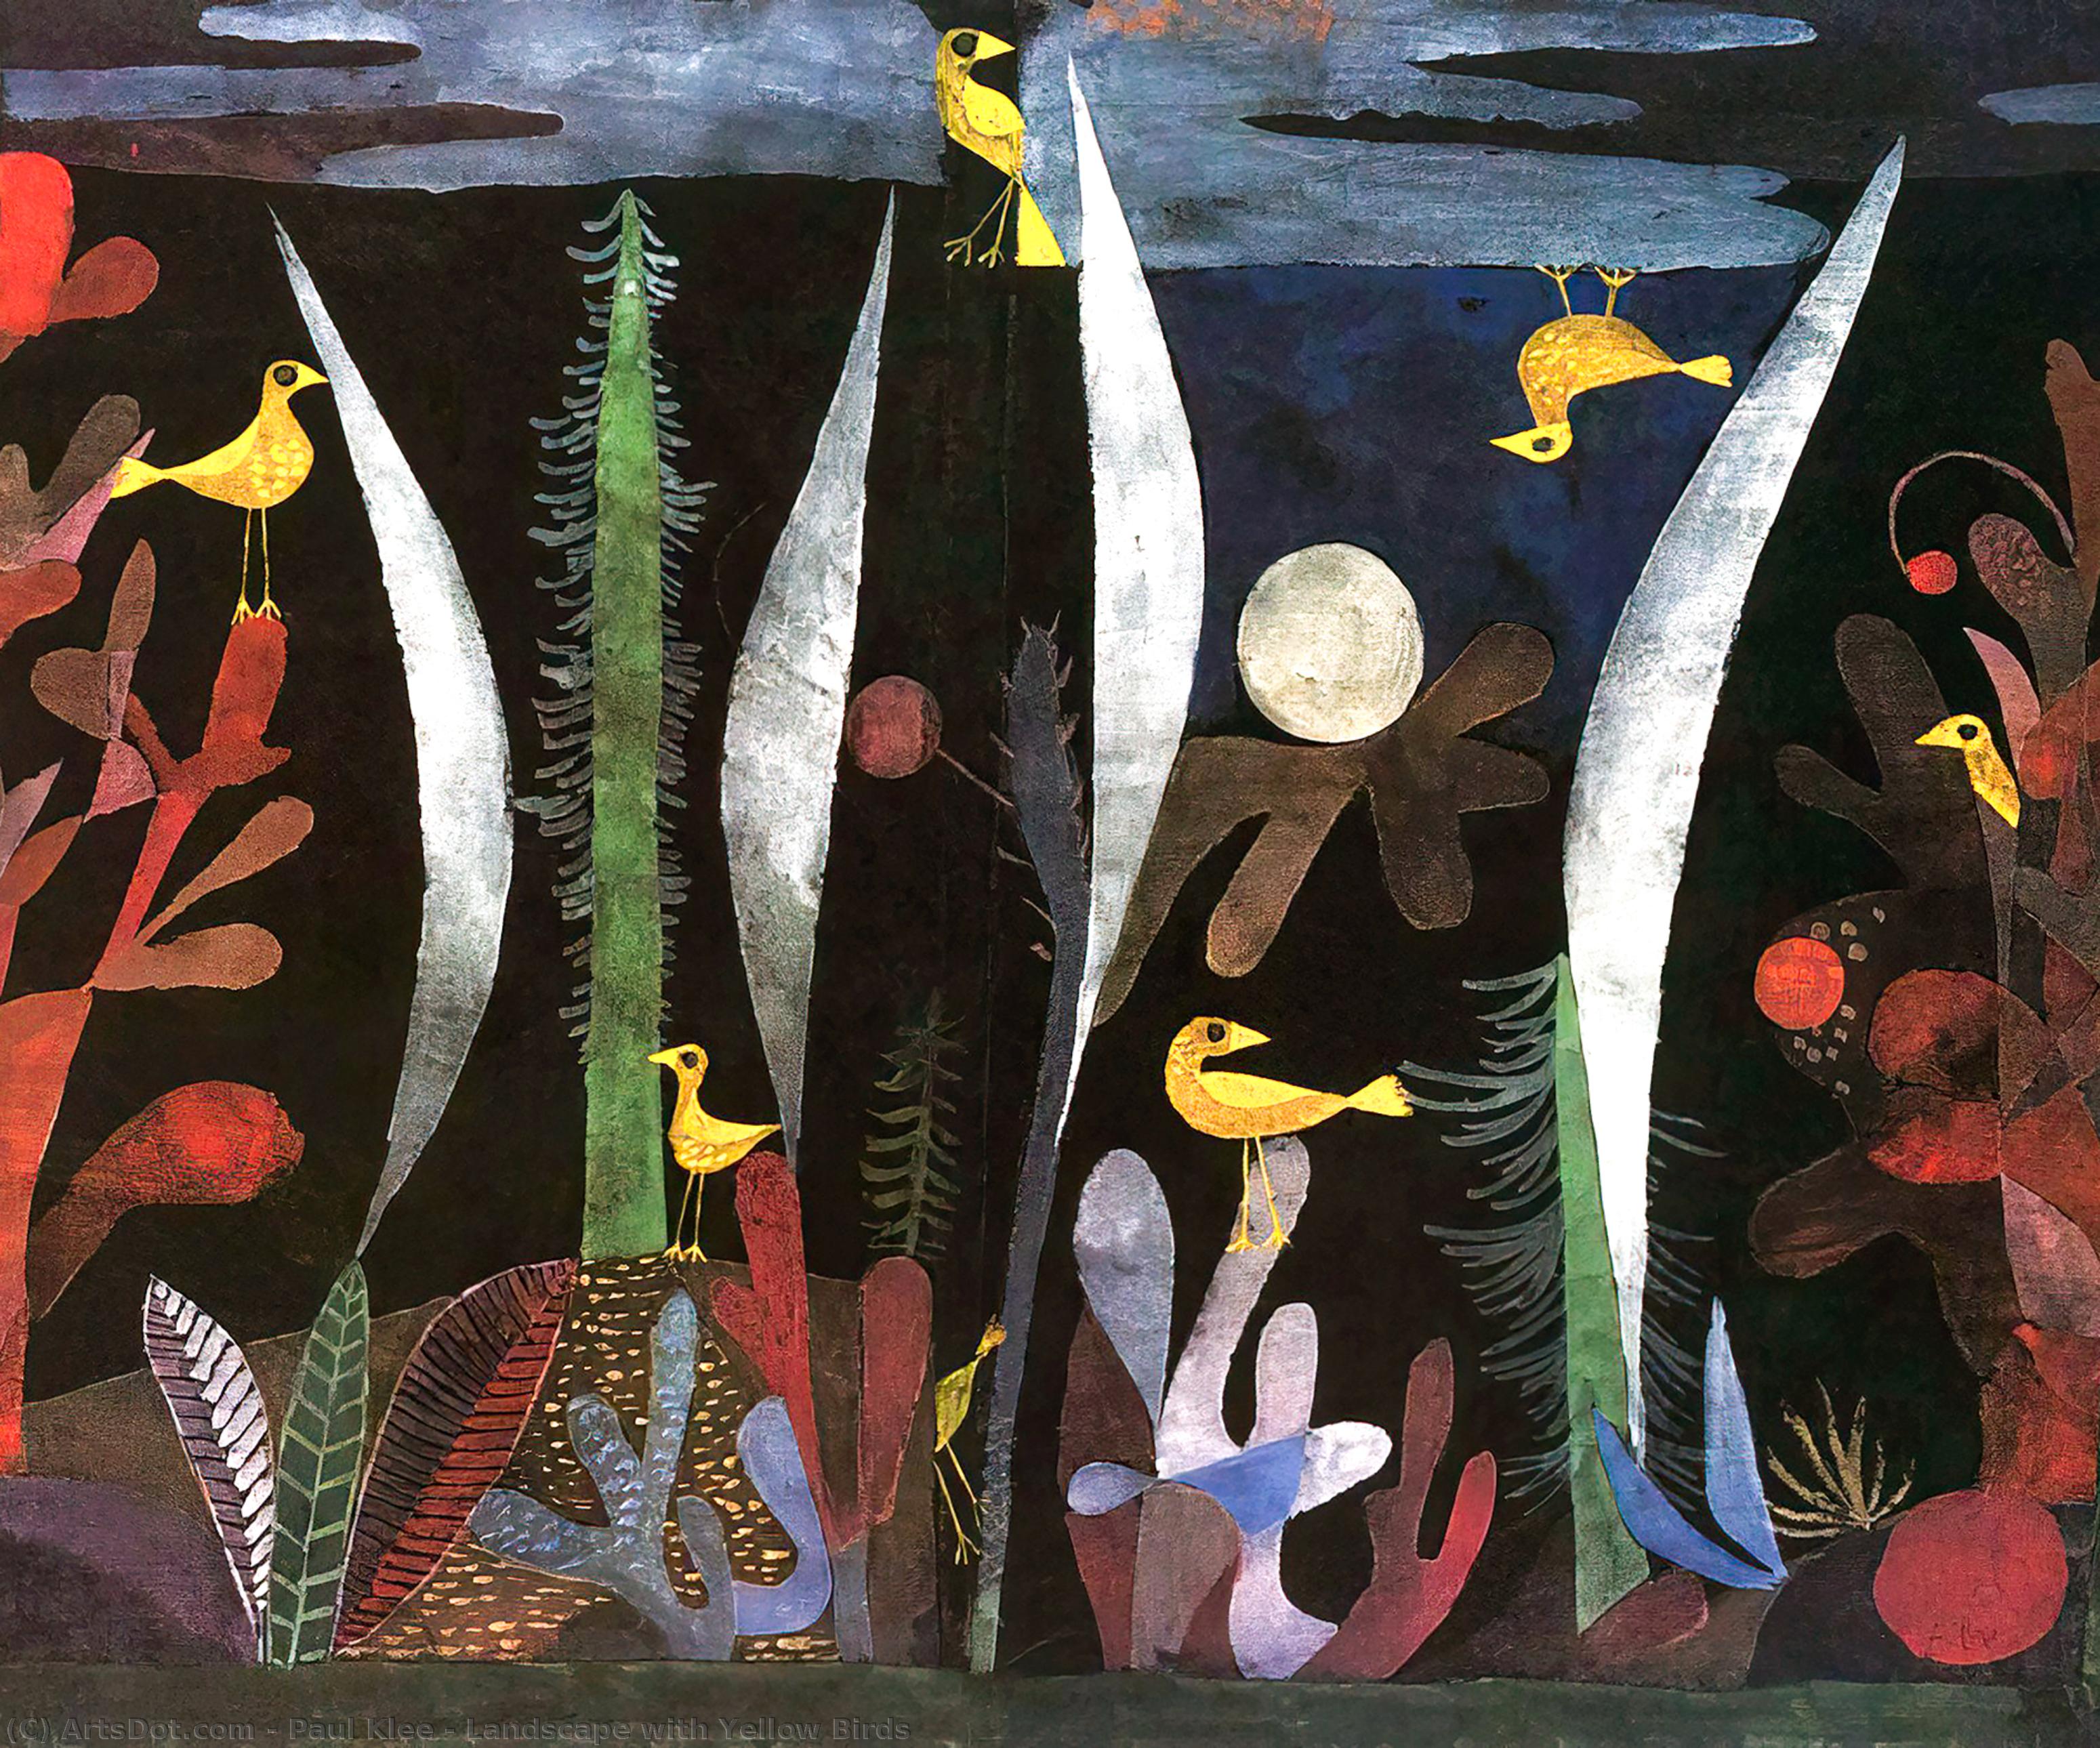 Wikioo.org - Bách khoa toàn thư về mỹ thuật - Vẽ tranh, Tác phẩm nghệ thuật Paul Klee - Landscape with Yellow Birds